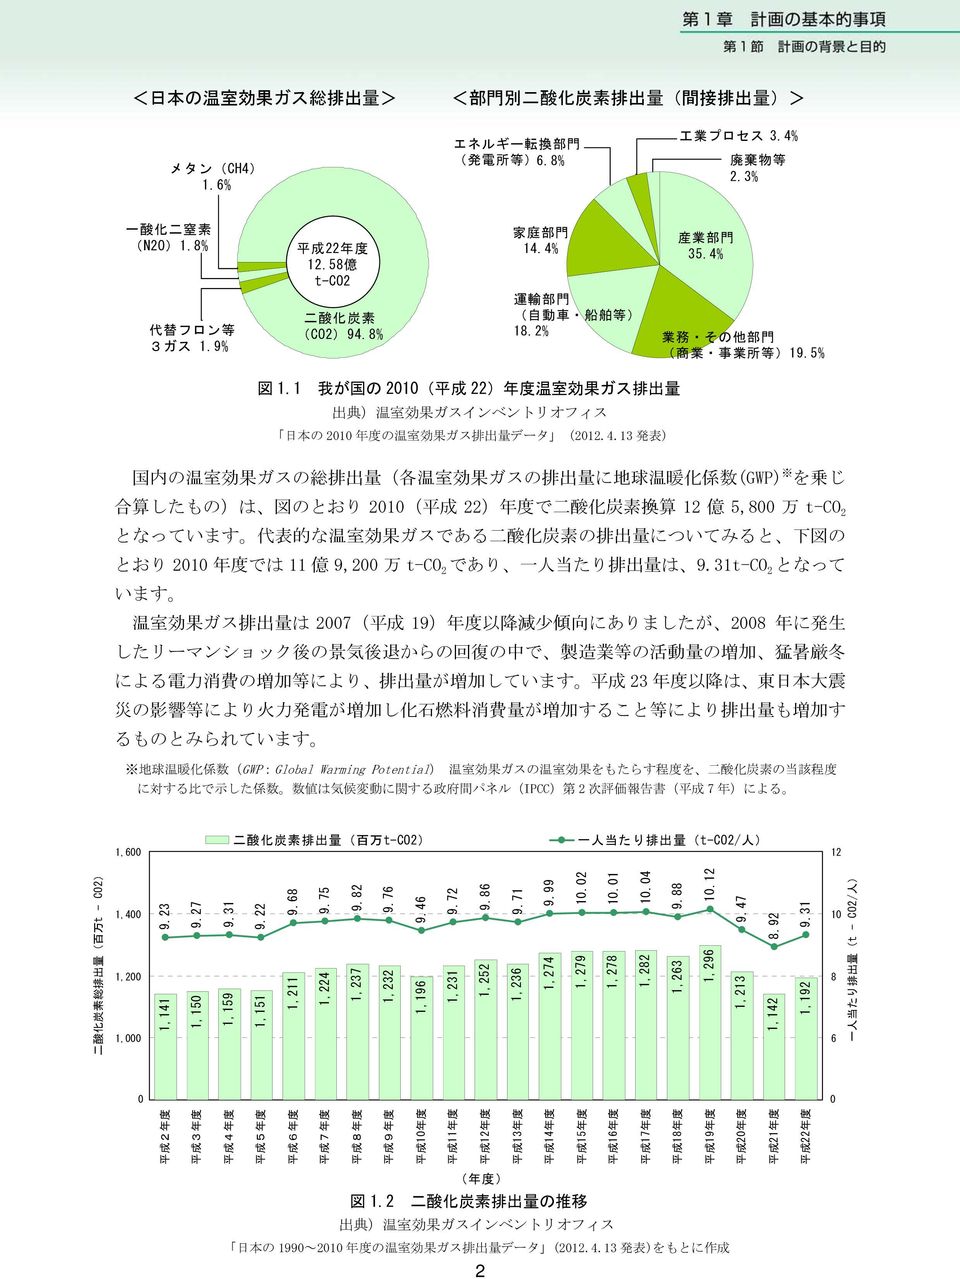 1 我 が 国 の 2010( 平 成 22) 年 度 温 室 効 果 ガス 排 出 量 出 典 ) 温 室 効 果 ガスインベントリオフィス 日 本 の 2010 年 度 の 温 室 効 果 ガス 排 出 量 データ (2012.4.